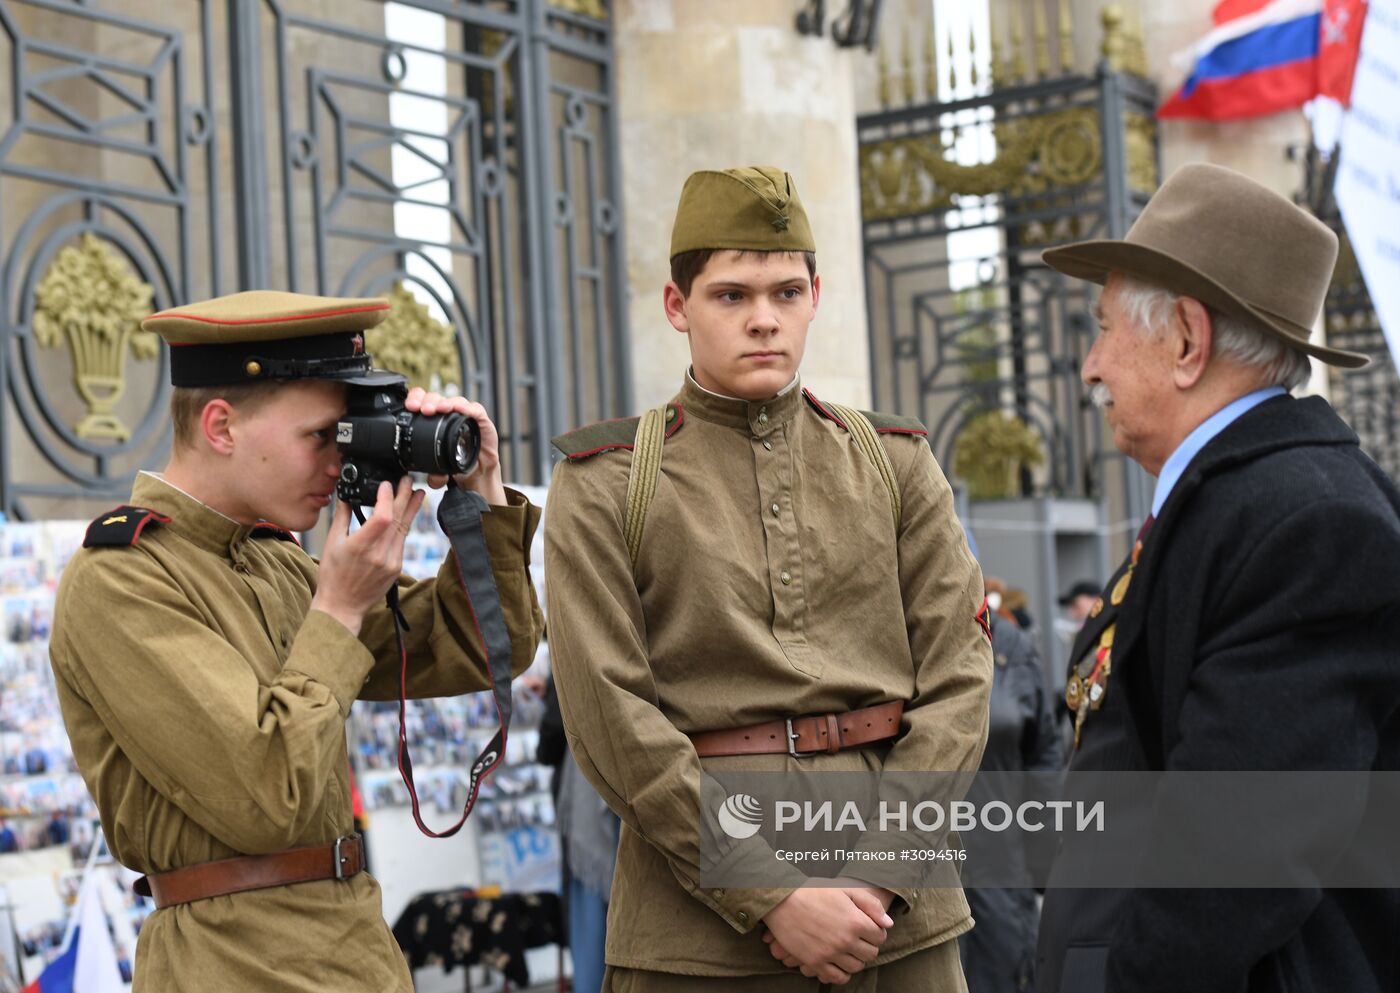 Празднование Дня Победы в Москве